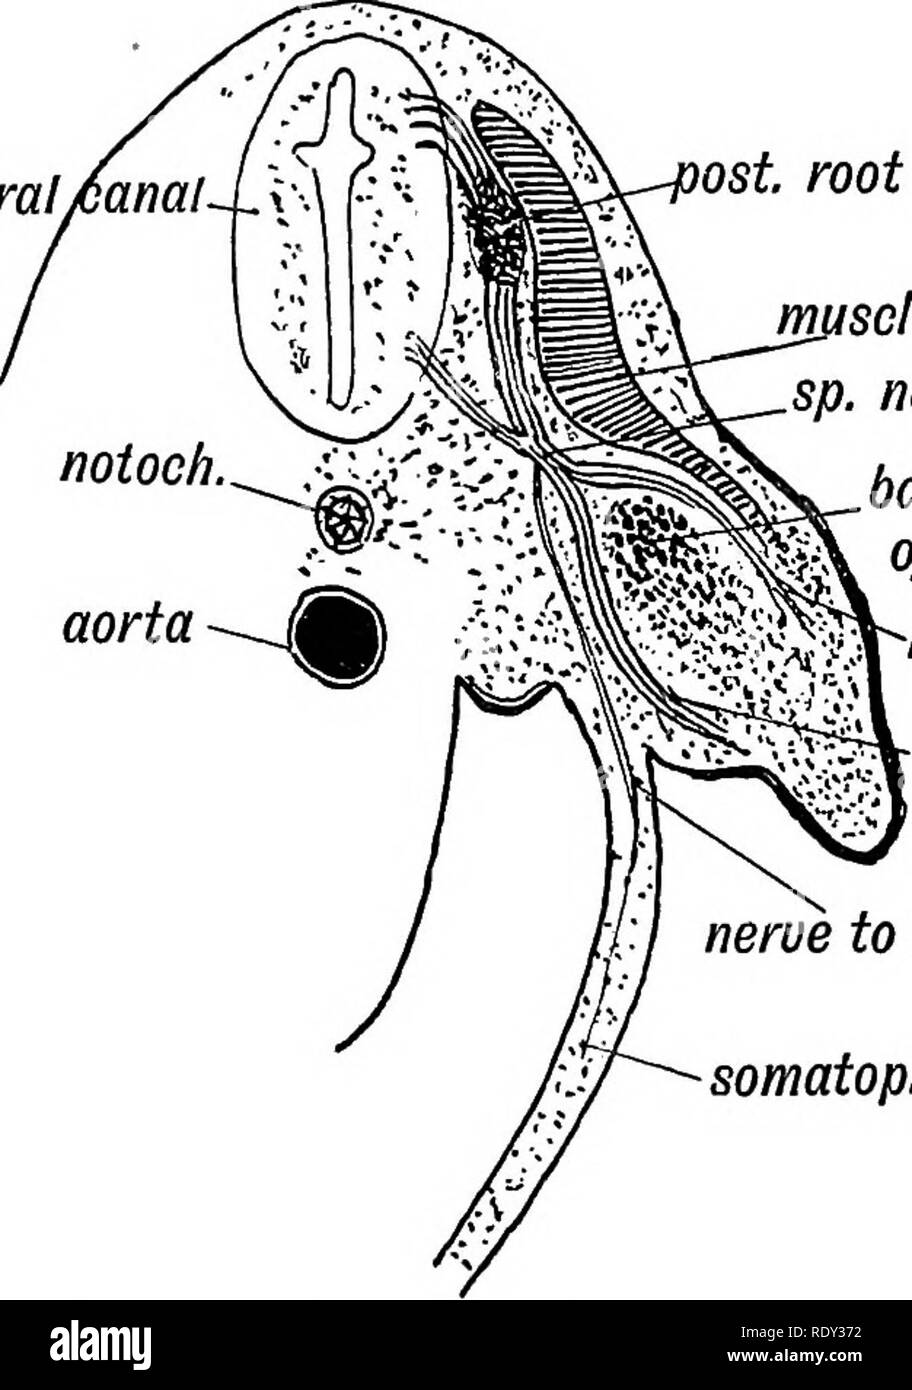 . Menschliche Embryologie und Morphologie. Embryologie, Menschliche; Morphologie. 292 menschliche Embryologie und MOEPHOLOGY. Die Achse des Körpers, (2) das Bein zu drehen nach außen, so dass der extensor Oberfläche der Knie nach oben gerichtet ist, mit der großen Zehe im vorderen und den kleinen Zeh hinter sich. (3) Arm-, auf der anderen Seite erfordern würde, nach innen gedreht werden, an der zuvor das Winkelstück ( extensor Oberfläche) in die dorsale Lage zu bringen. Die Drehung, die die embryonale Gliedmaßen in die erwachsene Position bringt Auftritt an der Kreuzung der gliedgürtels mit der Amtsleitung. Rotation an der Gliedgürtels. Zu verstehen - das Ausmaß der Rotier Stockfoto